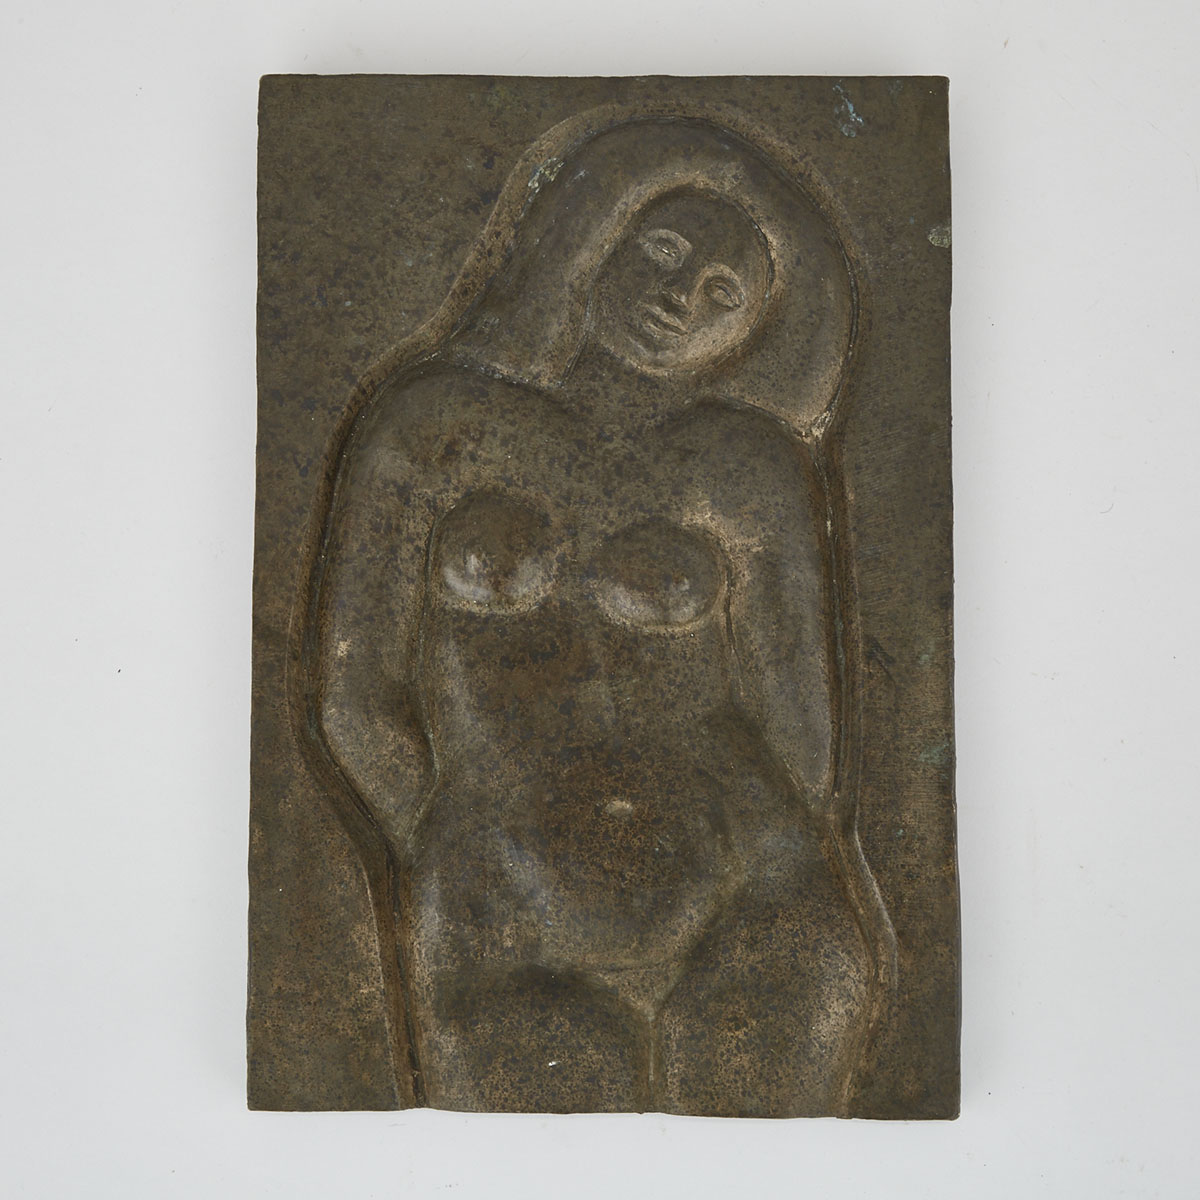 Canadian School Bonze Relief Plaque, 3/4 Length Nude, mid 20th century